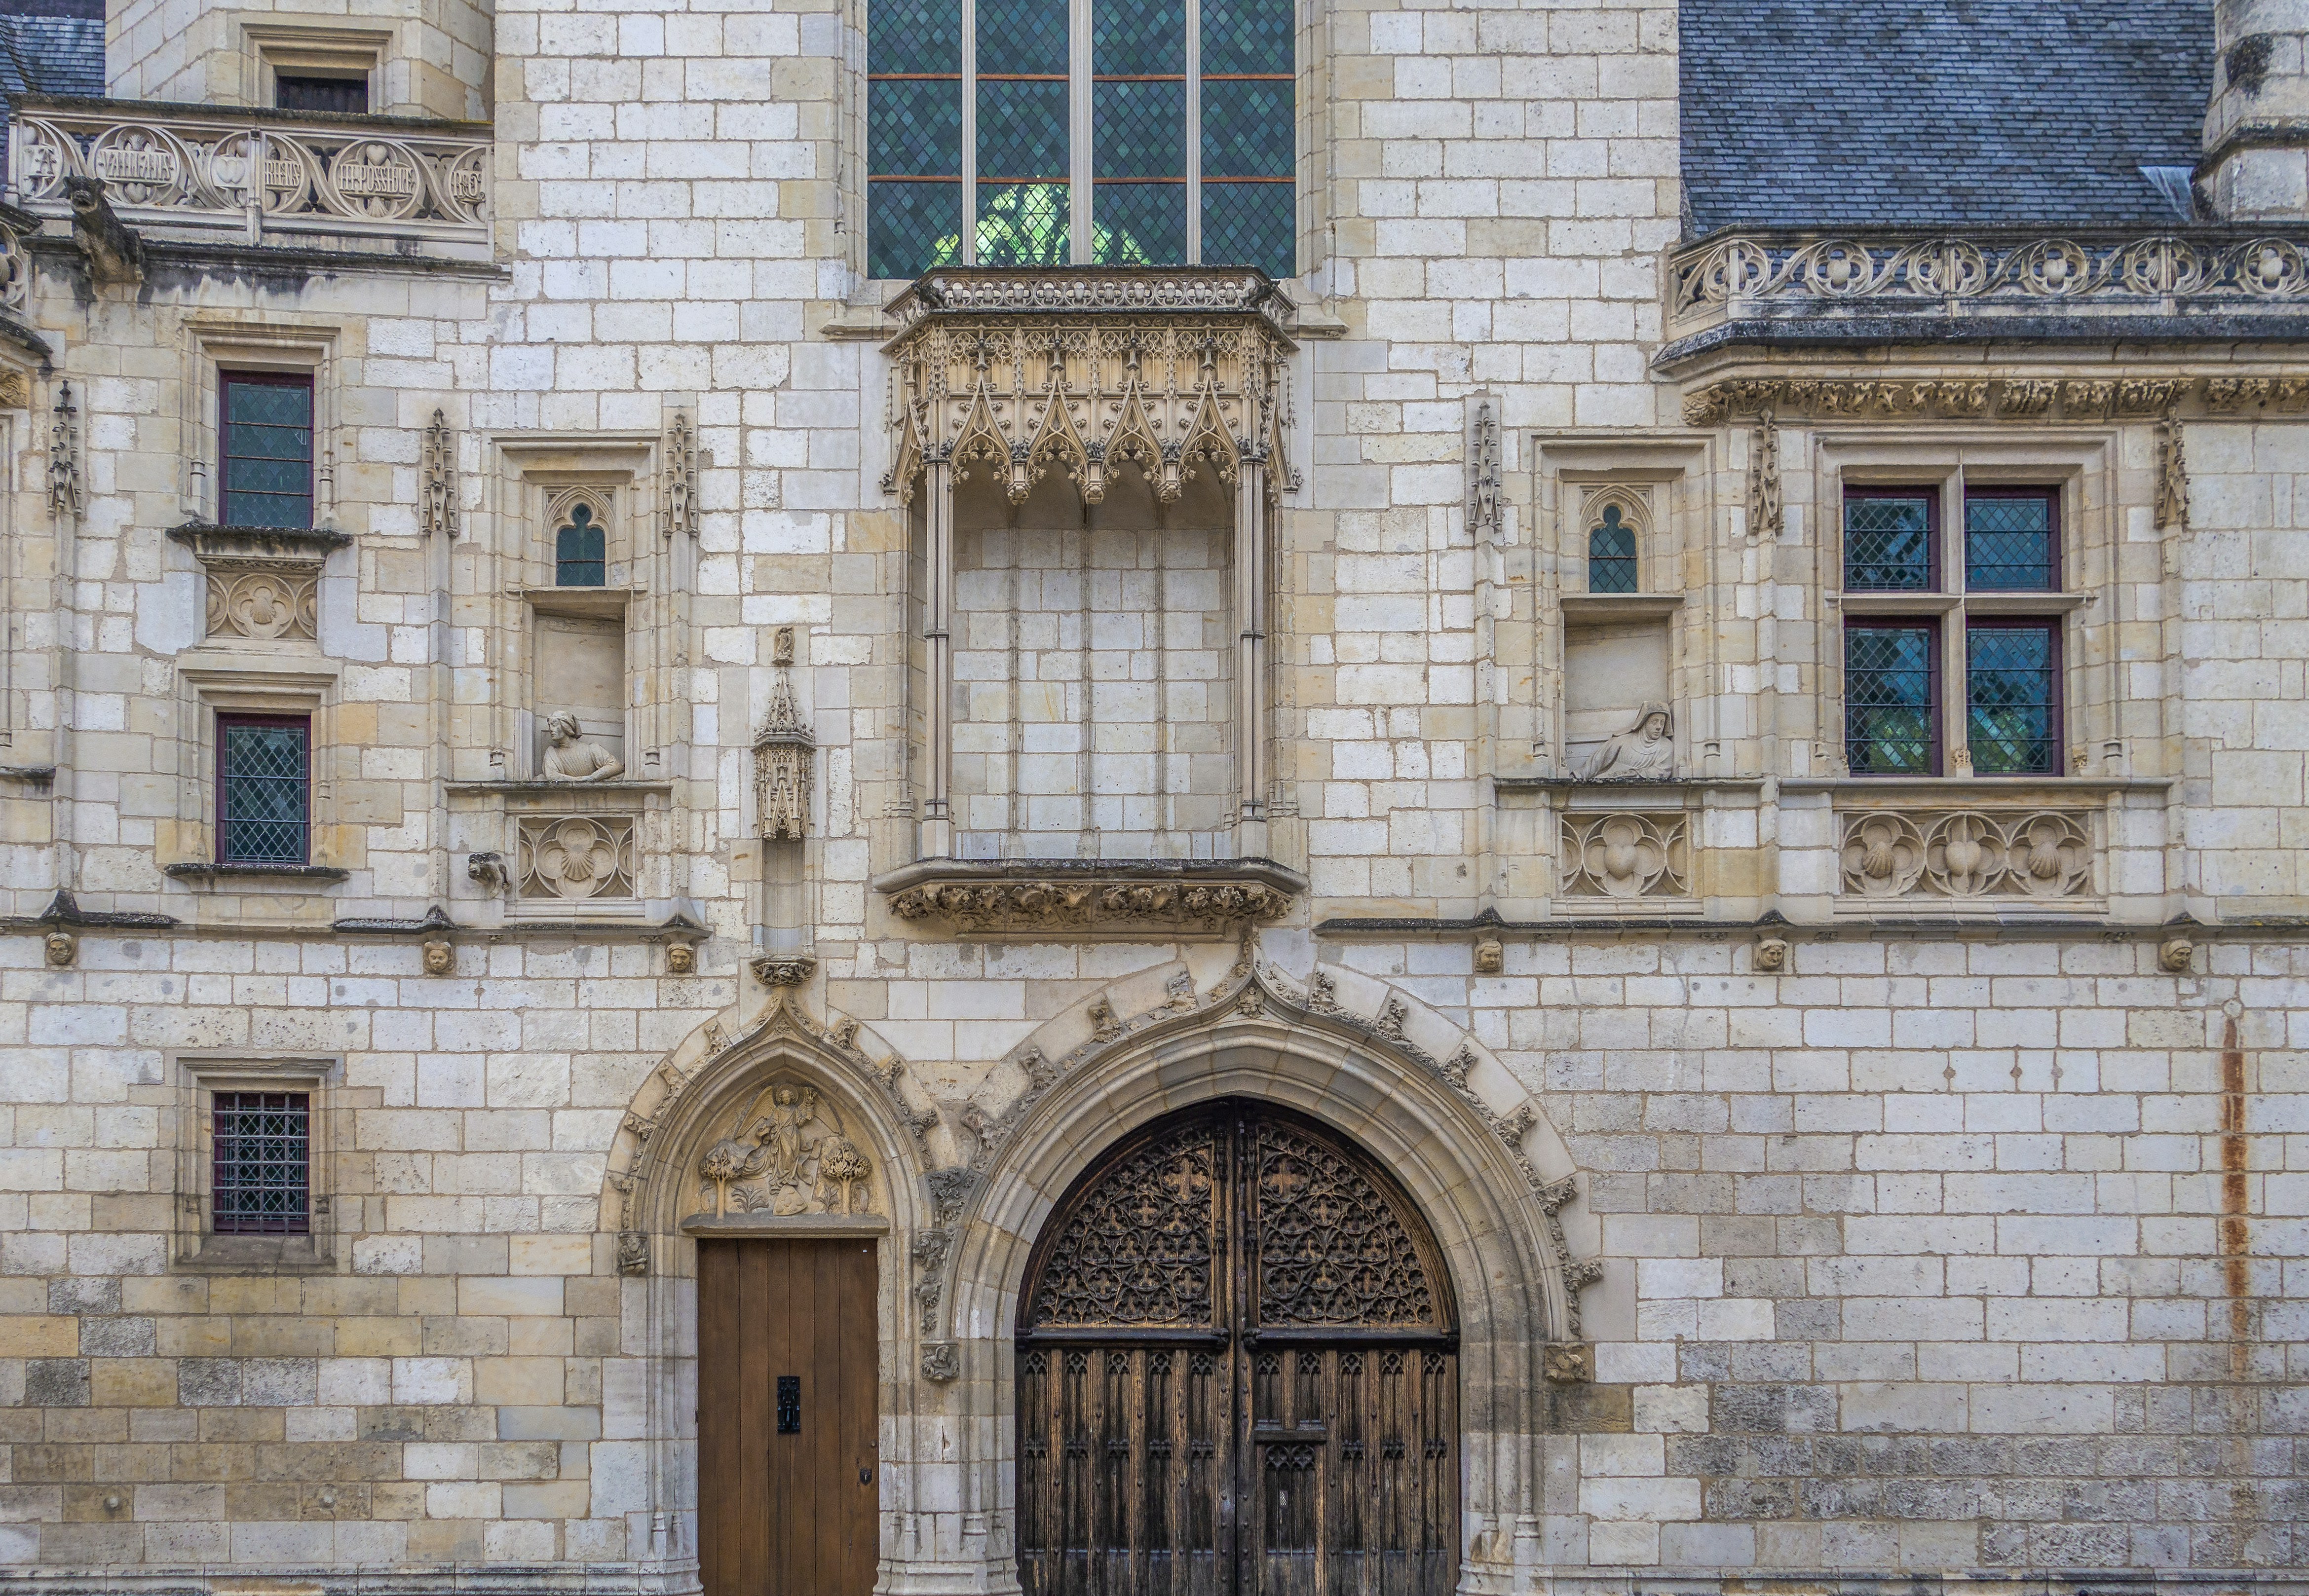 La très jolie ville de Bourges, capitale historique et culturelle du Berry, ville de Jacques Cœur banquier de Charles VII, de la cathédrale Saint-Étienne mais également de ses marais potagers, havre de verdure en plein centre ville.